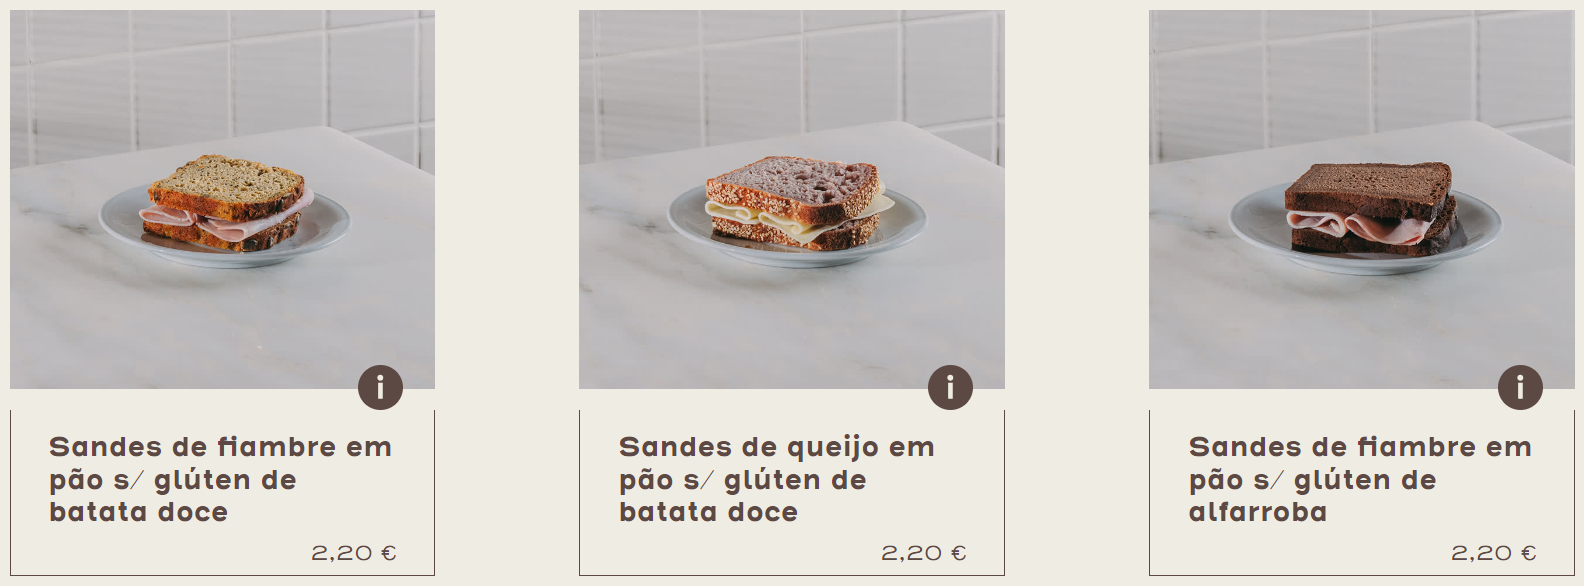 Tipos de sandes - A padaria Portuguesa